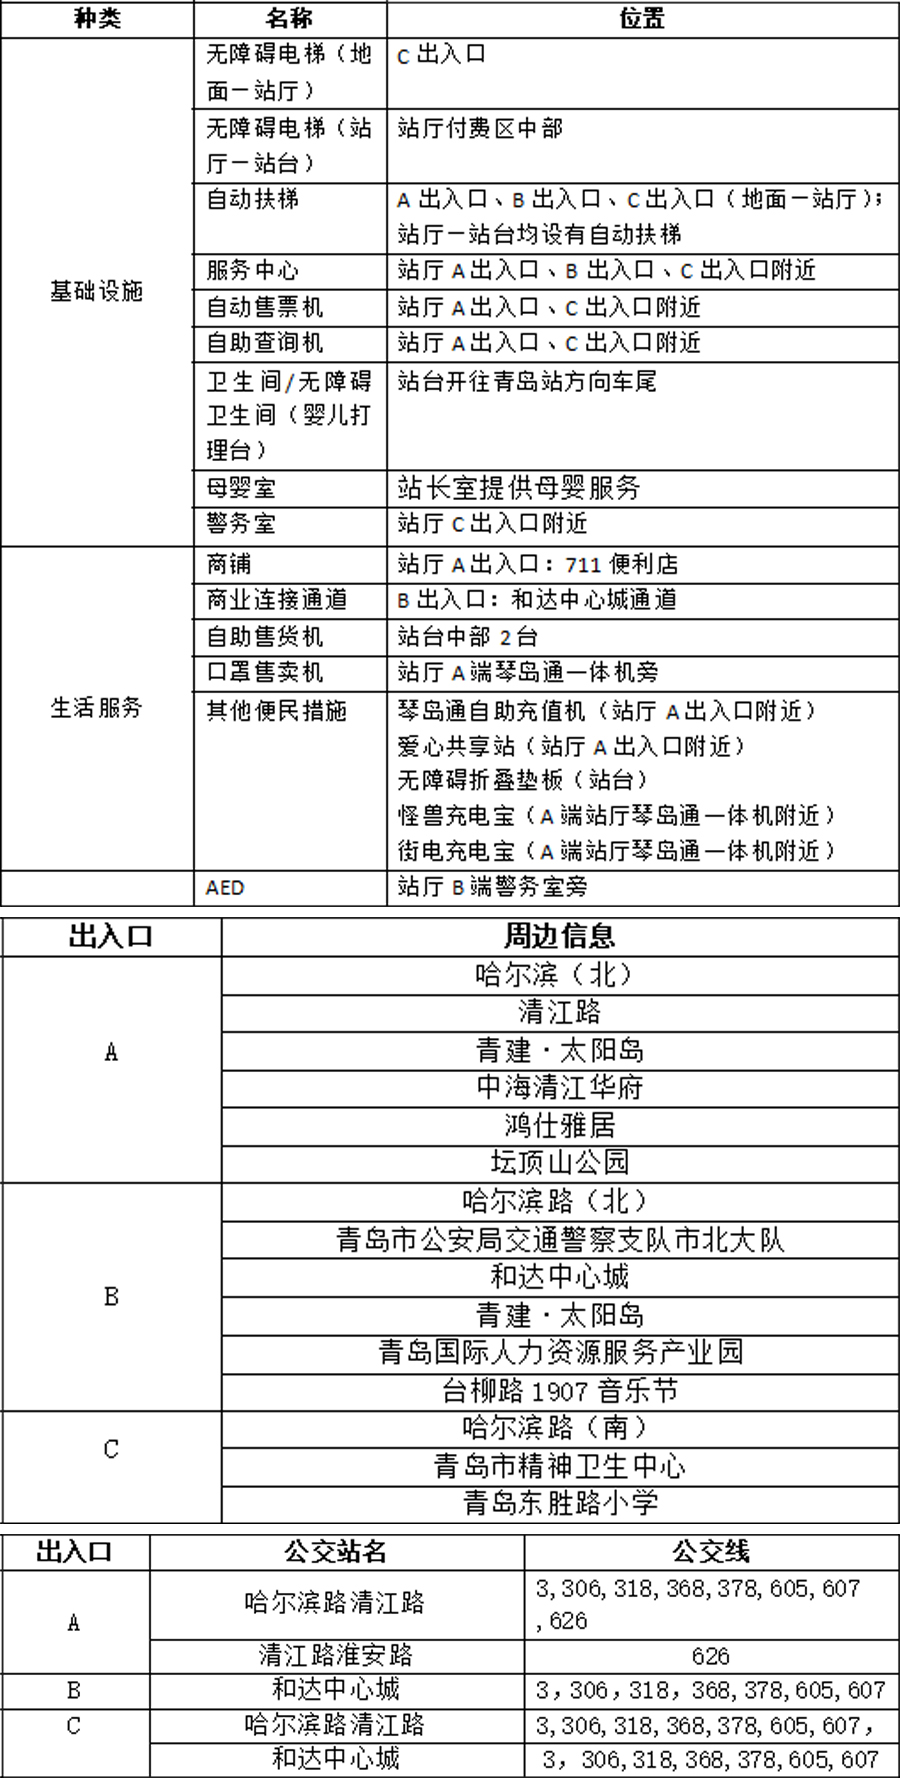 12清江路站站点信息统计表(2) 拷贝.jpg